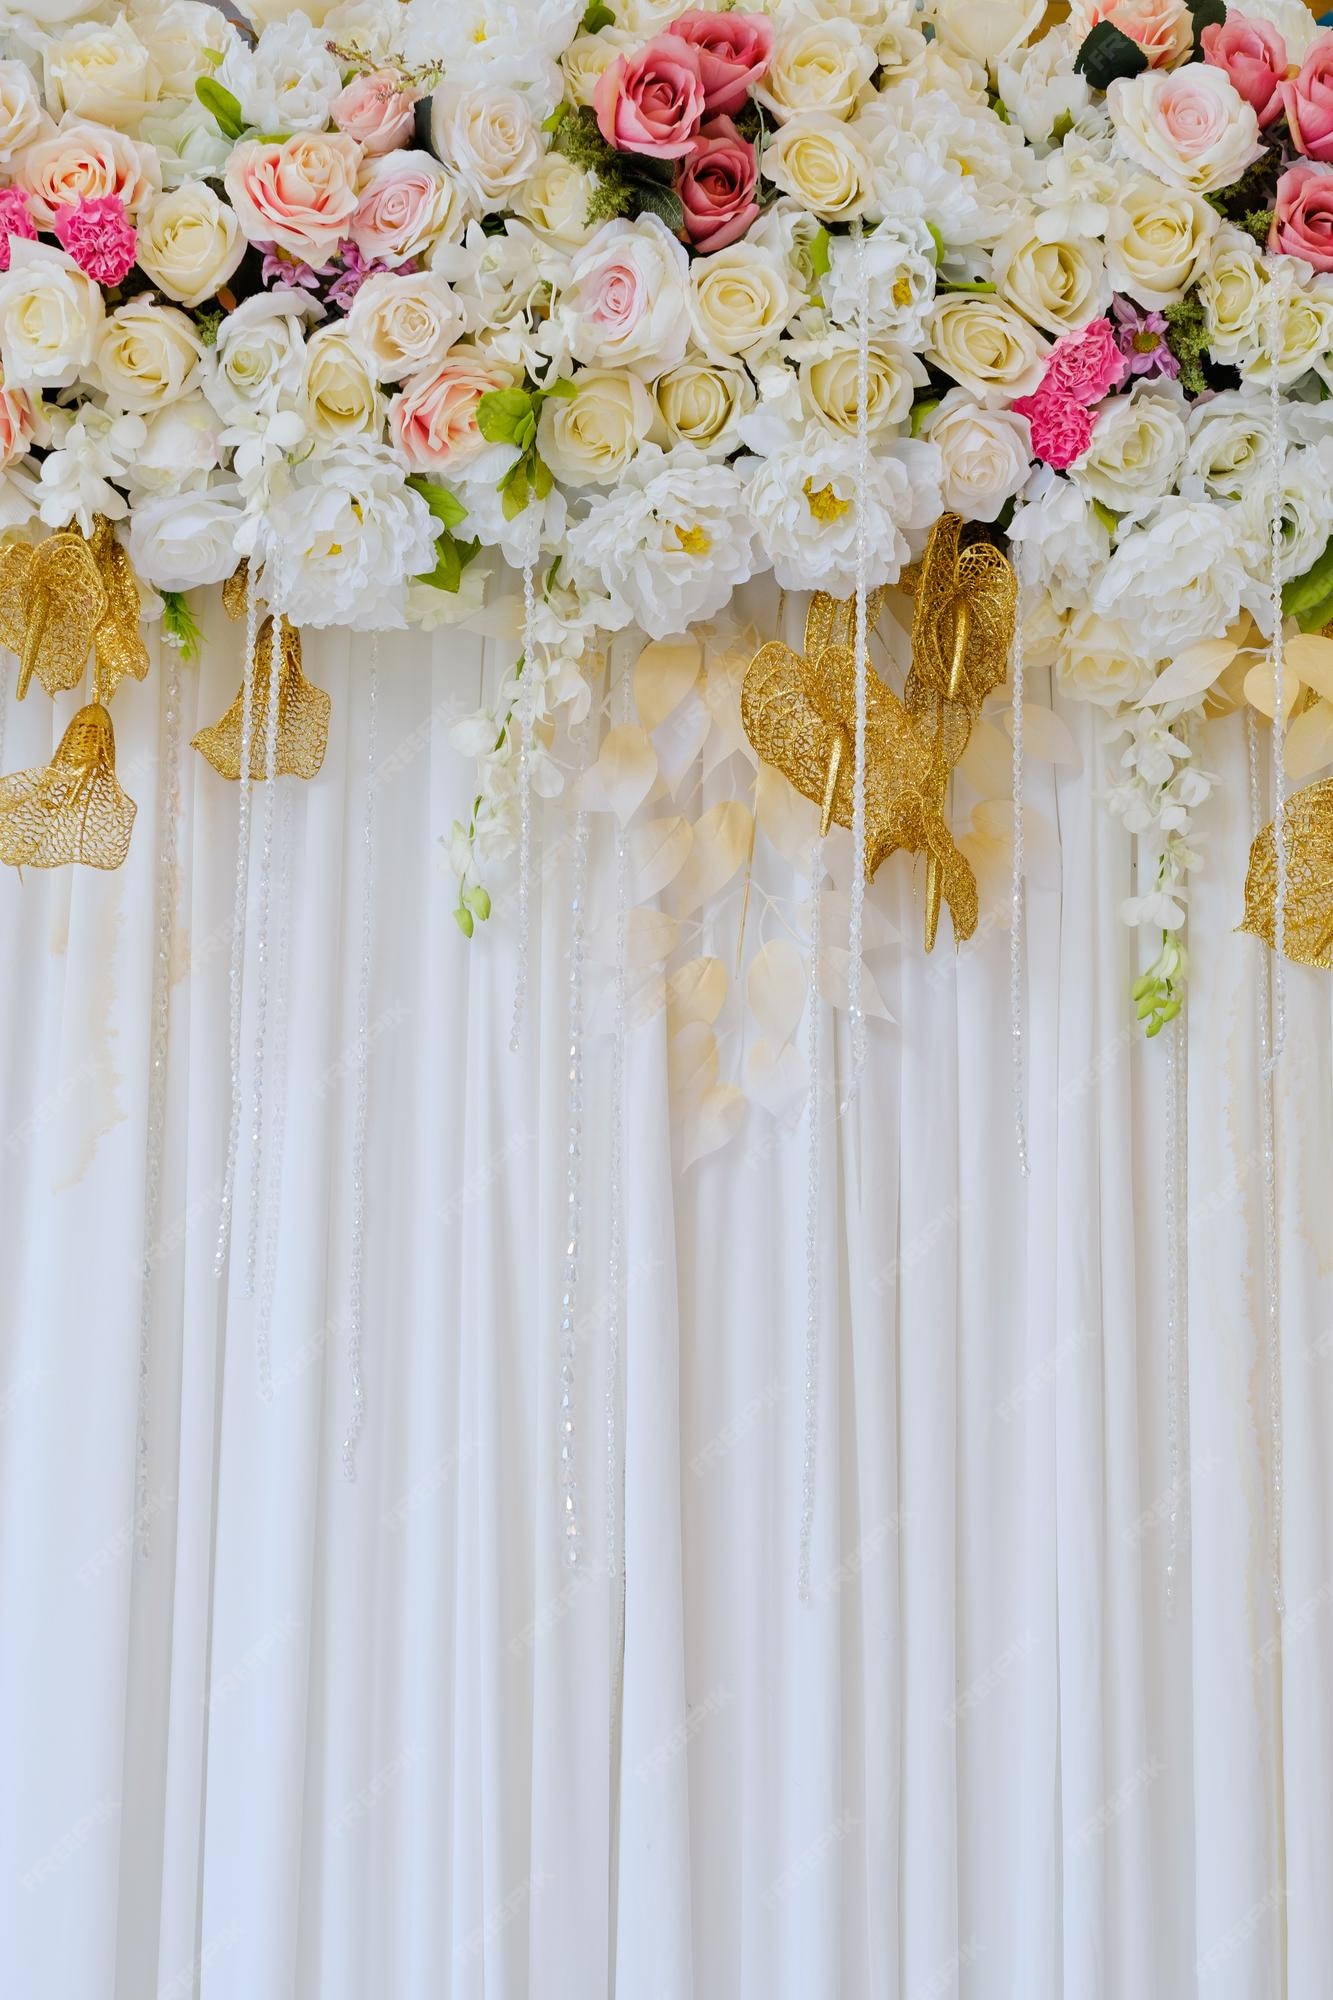 Premium Photo | Wedding decoration flower background colorful background  fresh rose